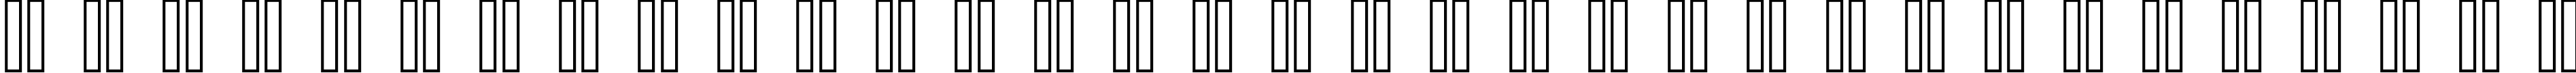 Пример написания русского алфавита шрифтом copy 10_56